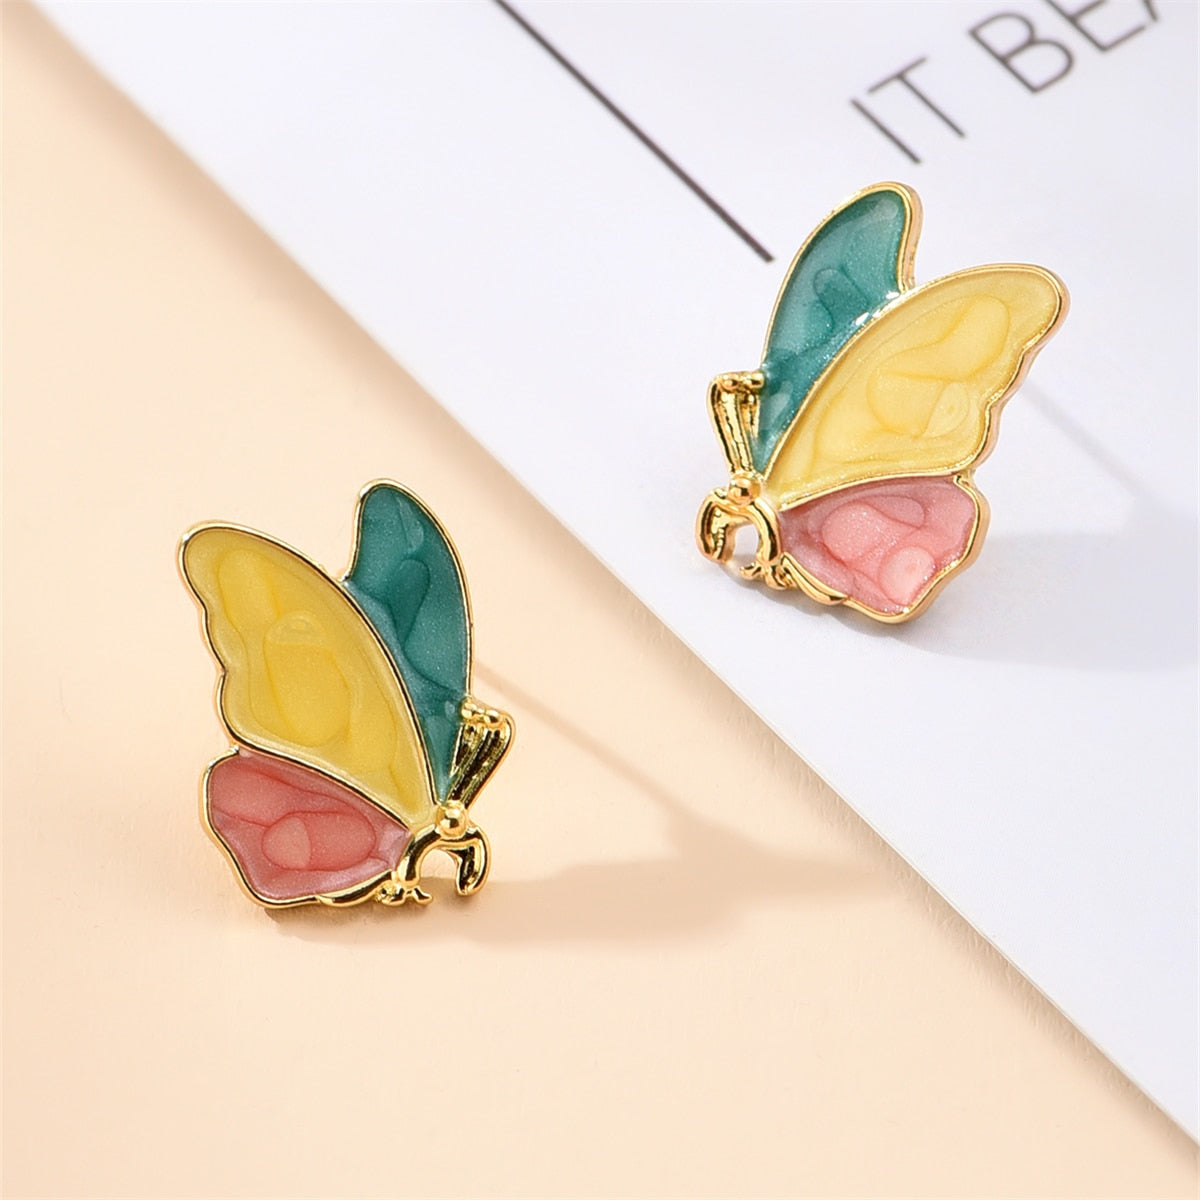 Aesthetic butterfly wing earrings